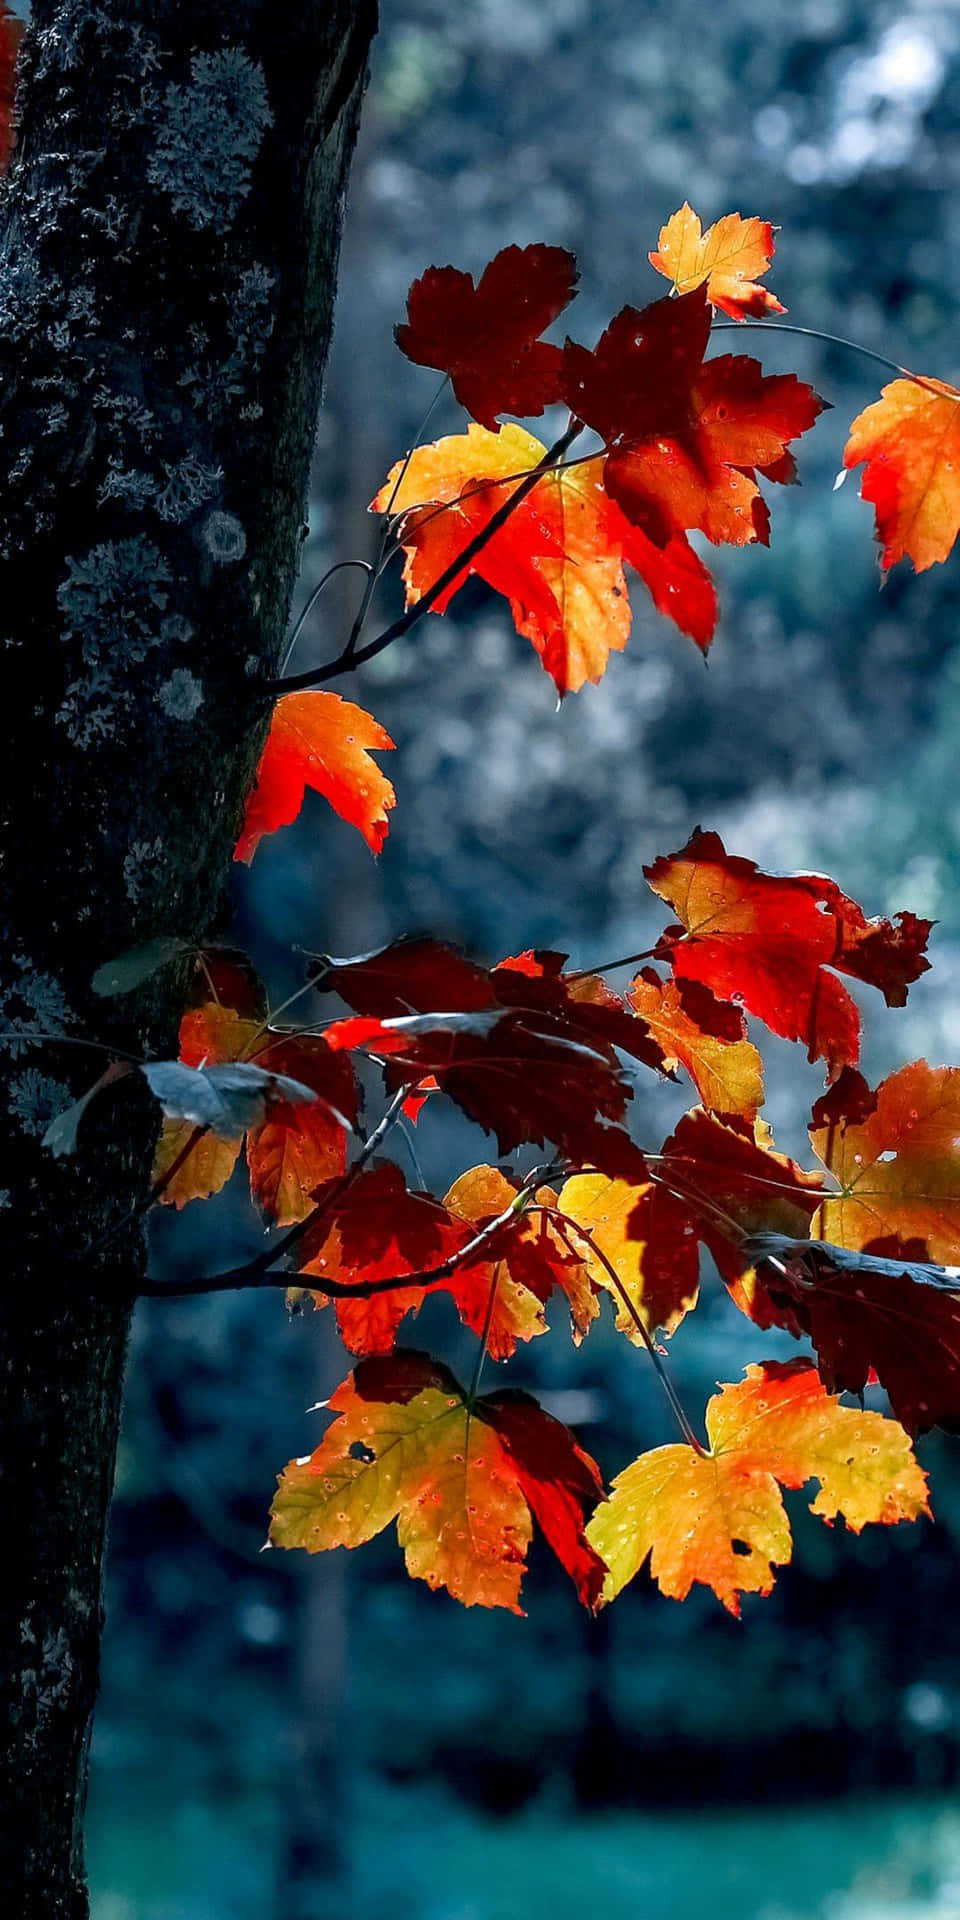 Serene Fall Landscape on Pixel 3